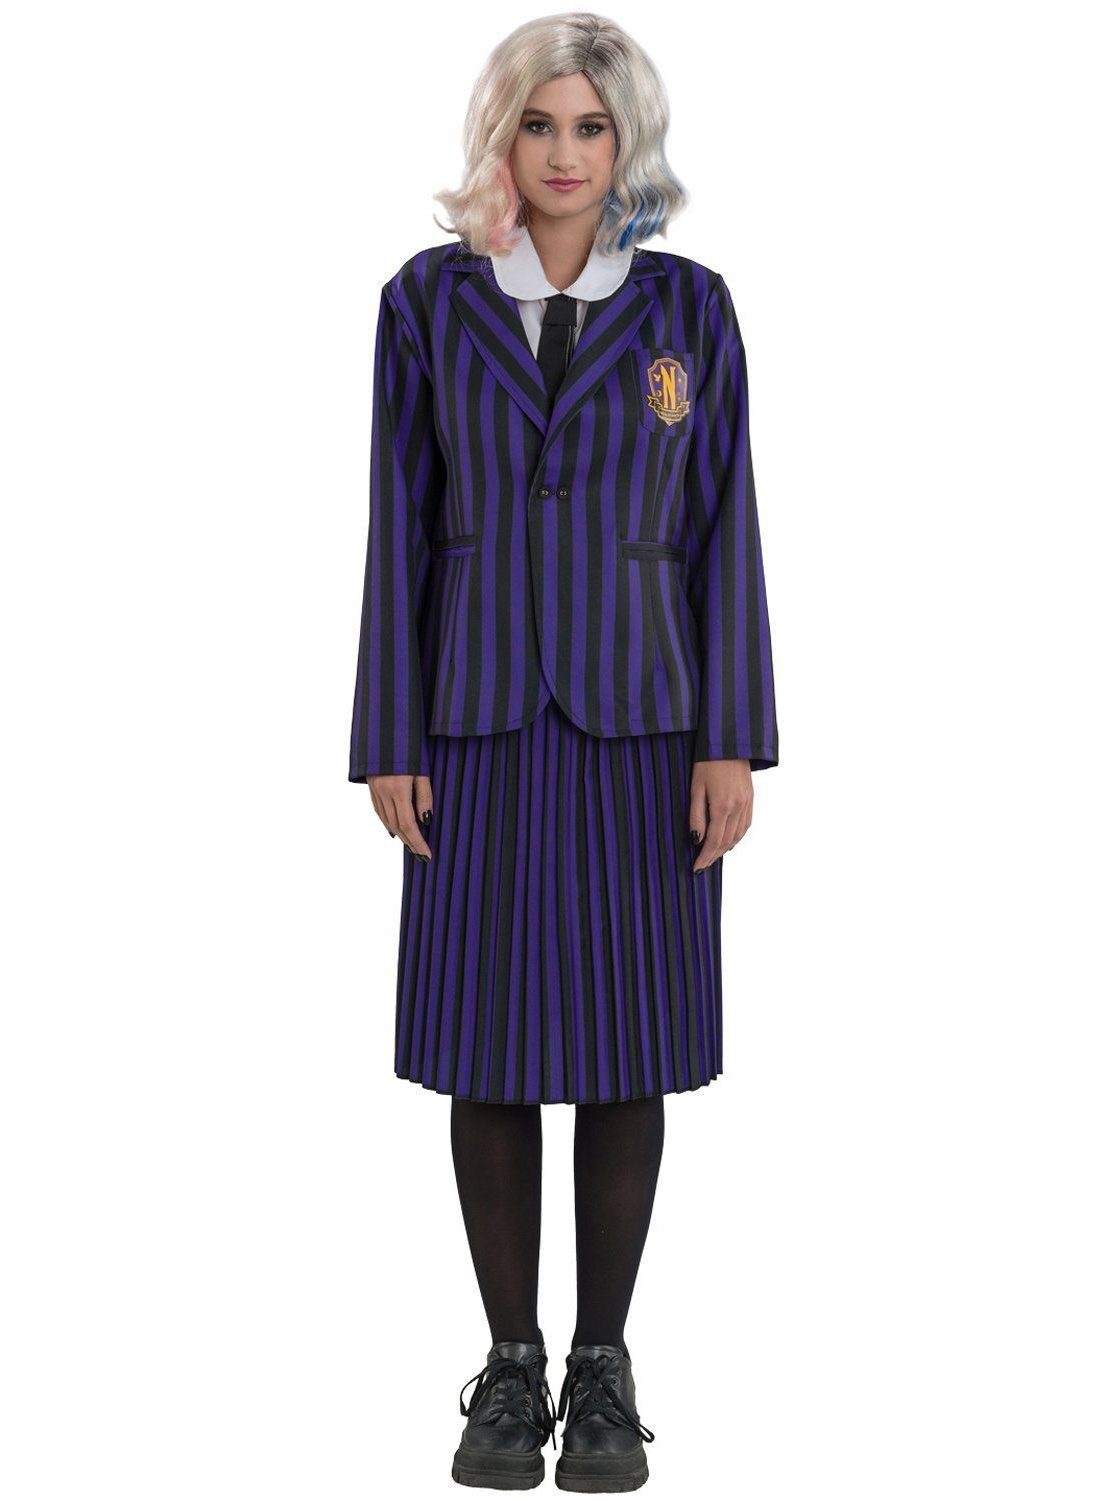 Metamorph Kostüm Wednesday Schuluniform schwarz-violett für Frauen, Die reguläre Uniform für weibliche Schüler der Nevermore Academy au